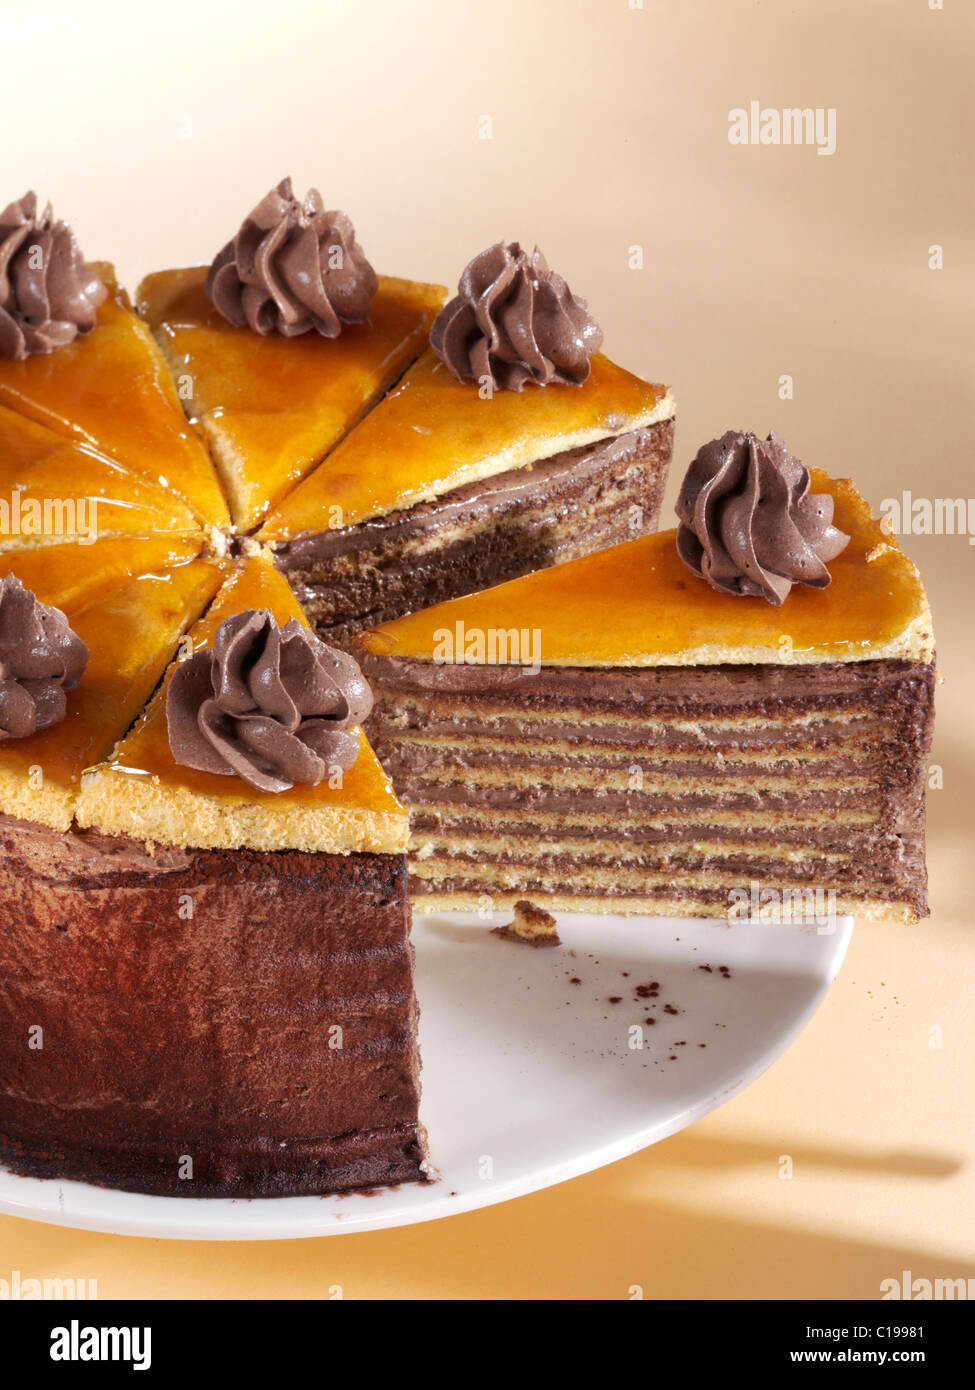 Dobos Kuchen auf eine Platte geschnitten, besteht ungarischen Dobostorta  aus Schichten von Biskuit und Choclate Creme mit Karamell Glasur  Stockfotografie - Alamy